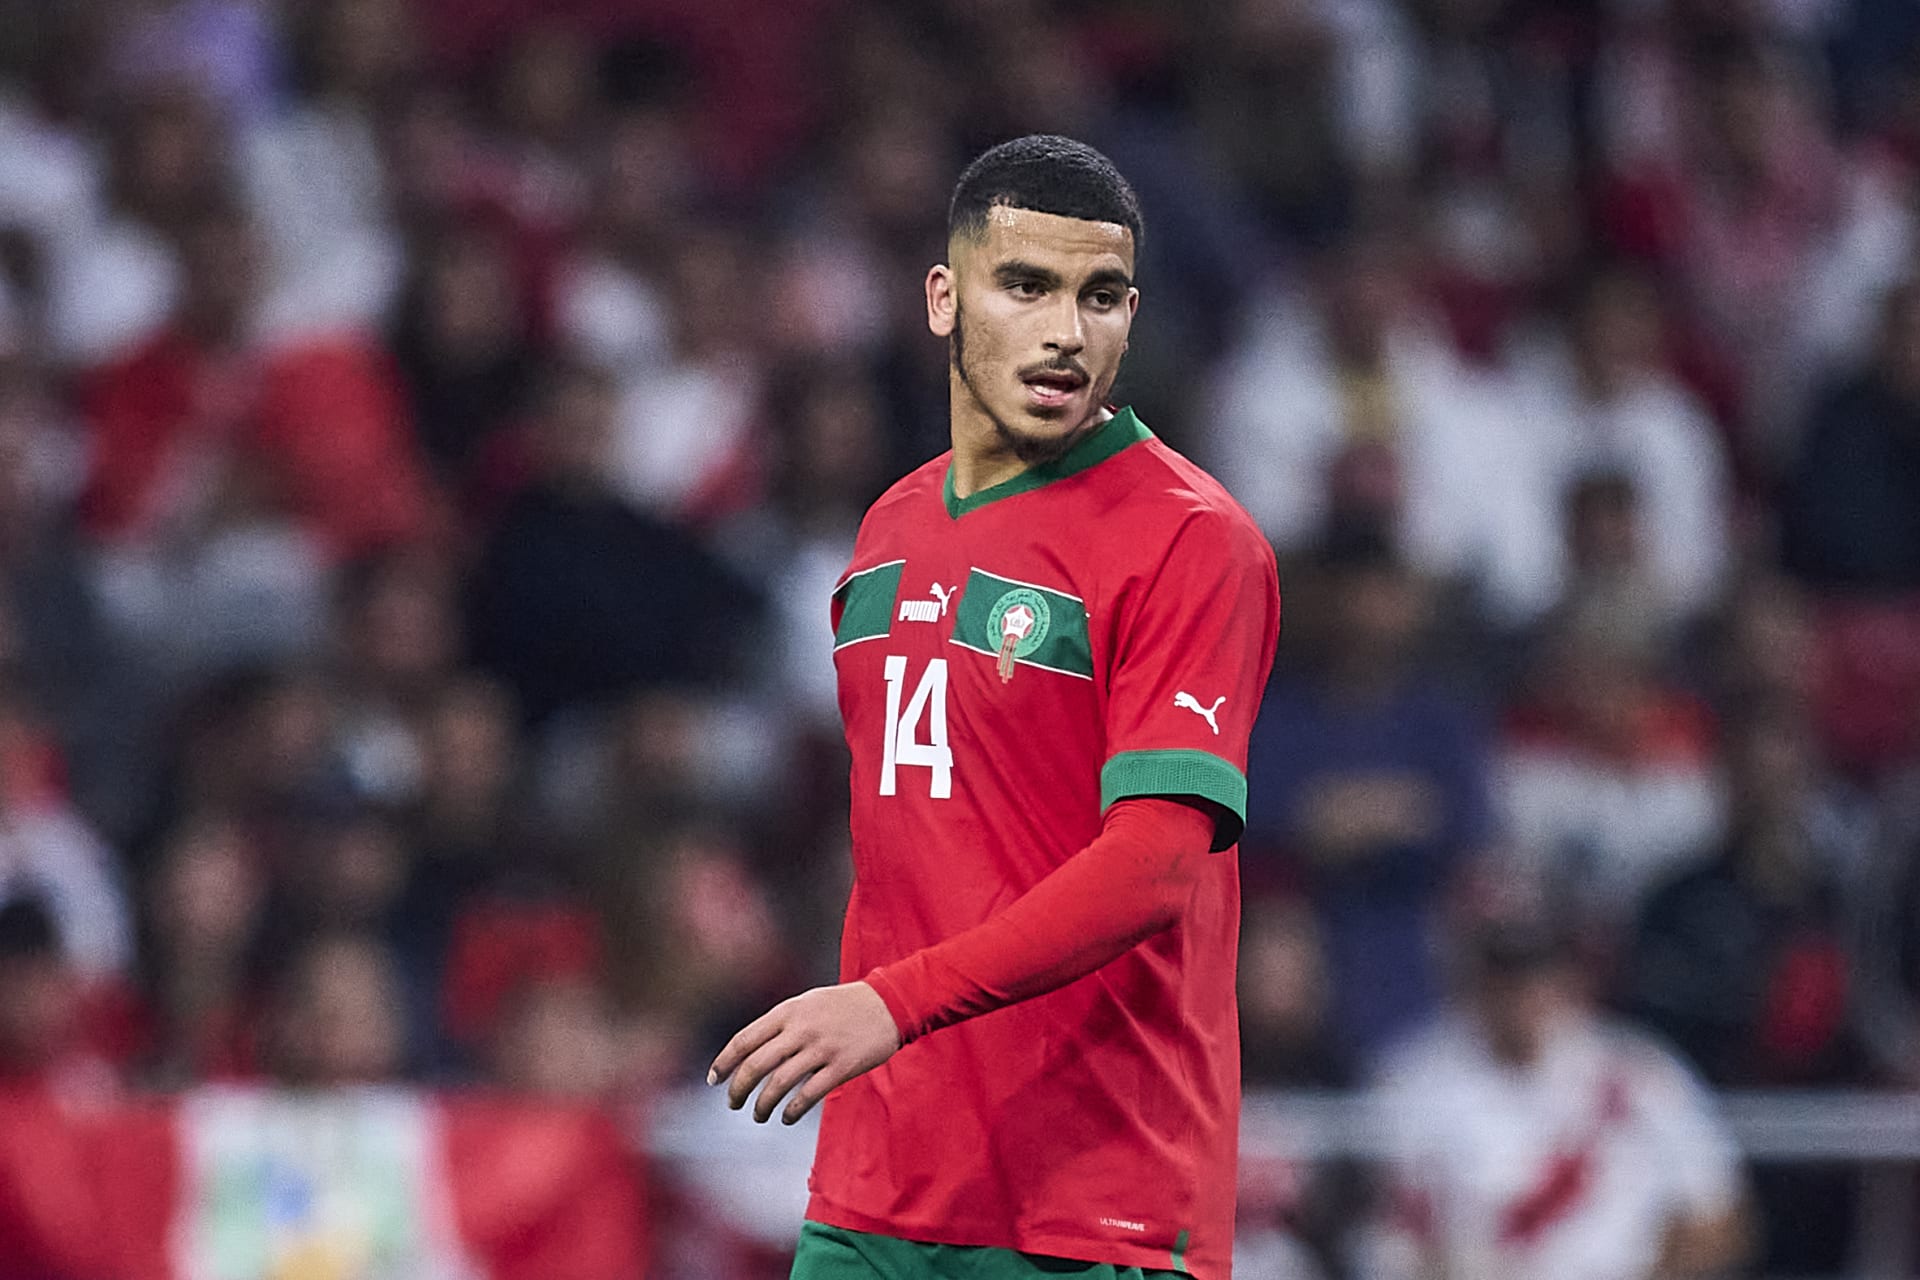 لاعب منتخب المغرب يعلّق على رفضه دعم مثلية الجنس خلال مباراة في الدوري الفرنسي